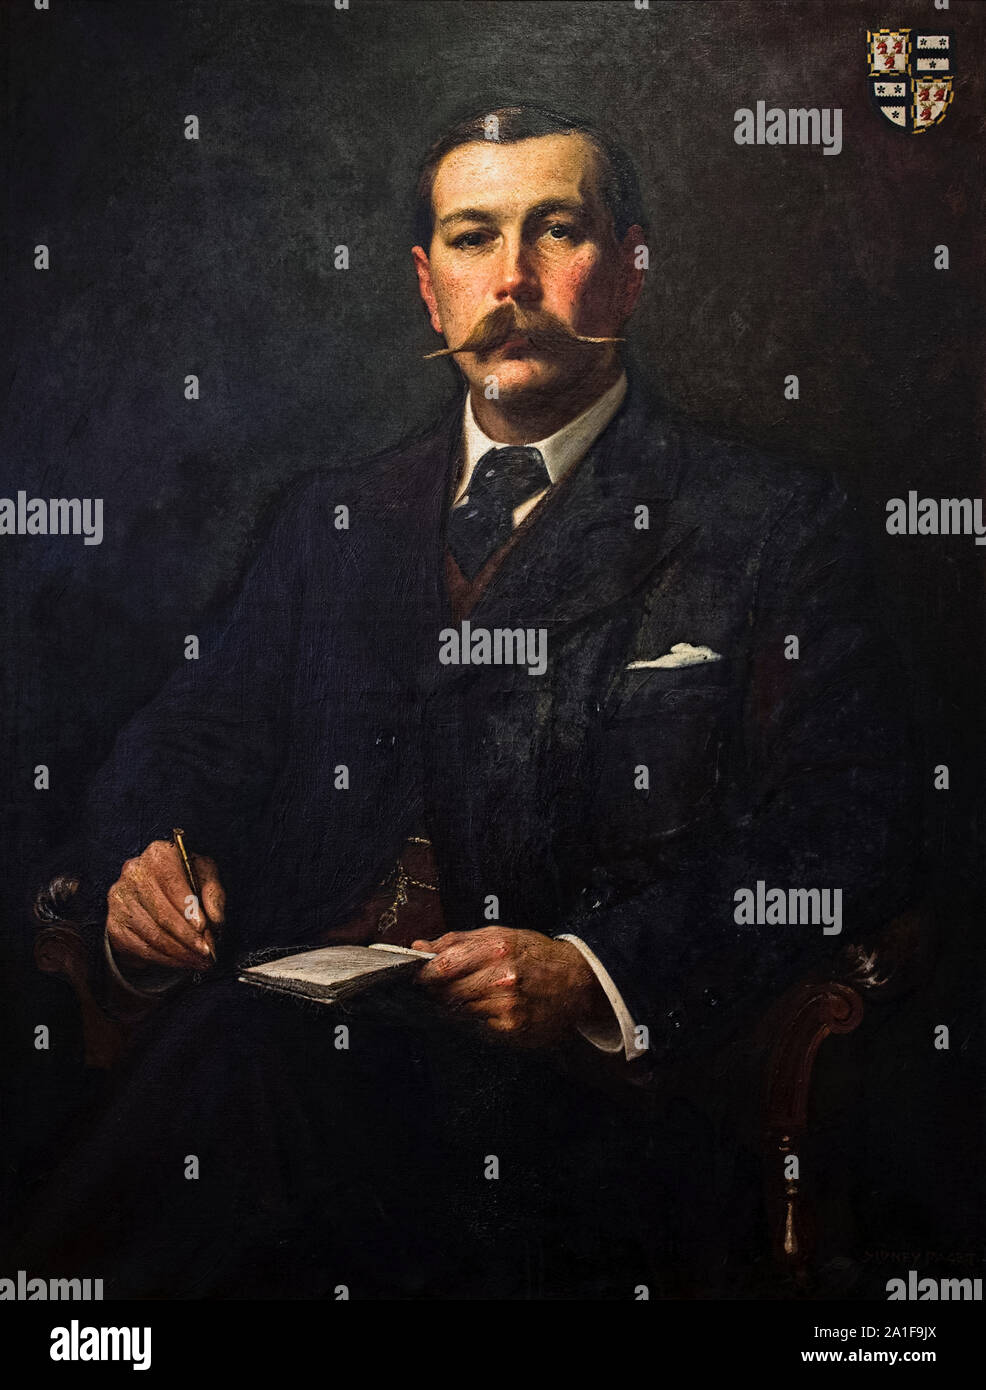 Sir Arthur Conan Doyle (1859-1930) écrivain britannique et créateur du détective de fiction Sherlock Holmes. Photographie de la peinture à l'huile par Sidney Paget (1860-1908) qui a illustré le Sherlock Holmes stories lorsque la première fois dans le Strand Magazine. Banque D'Images